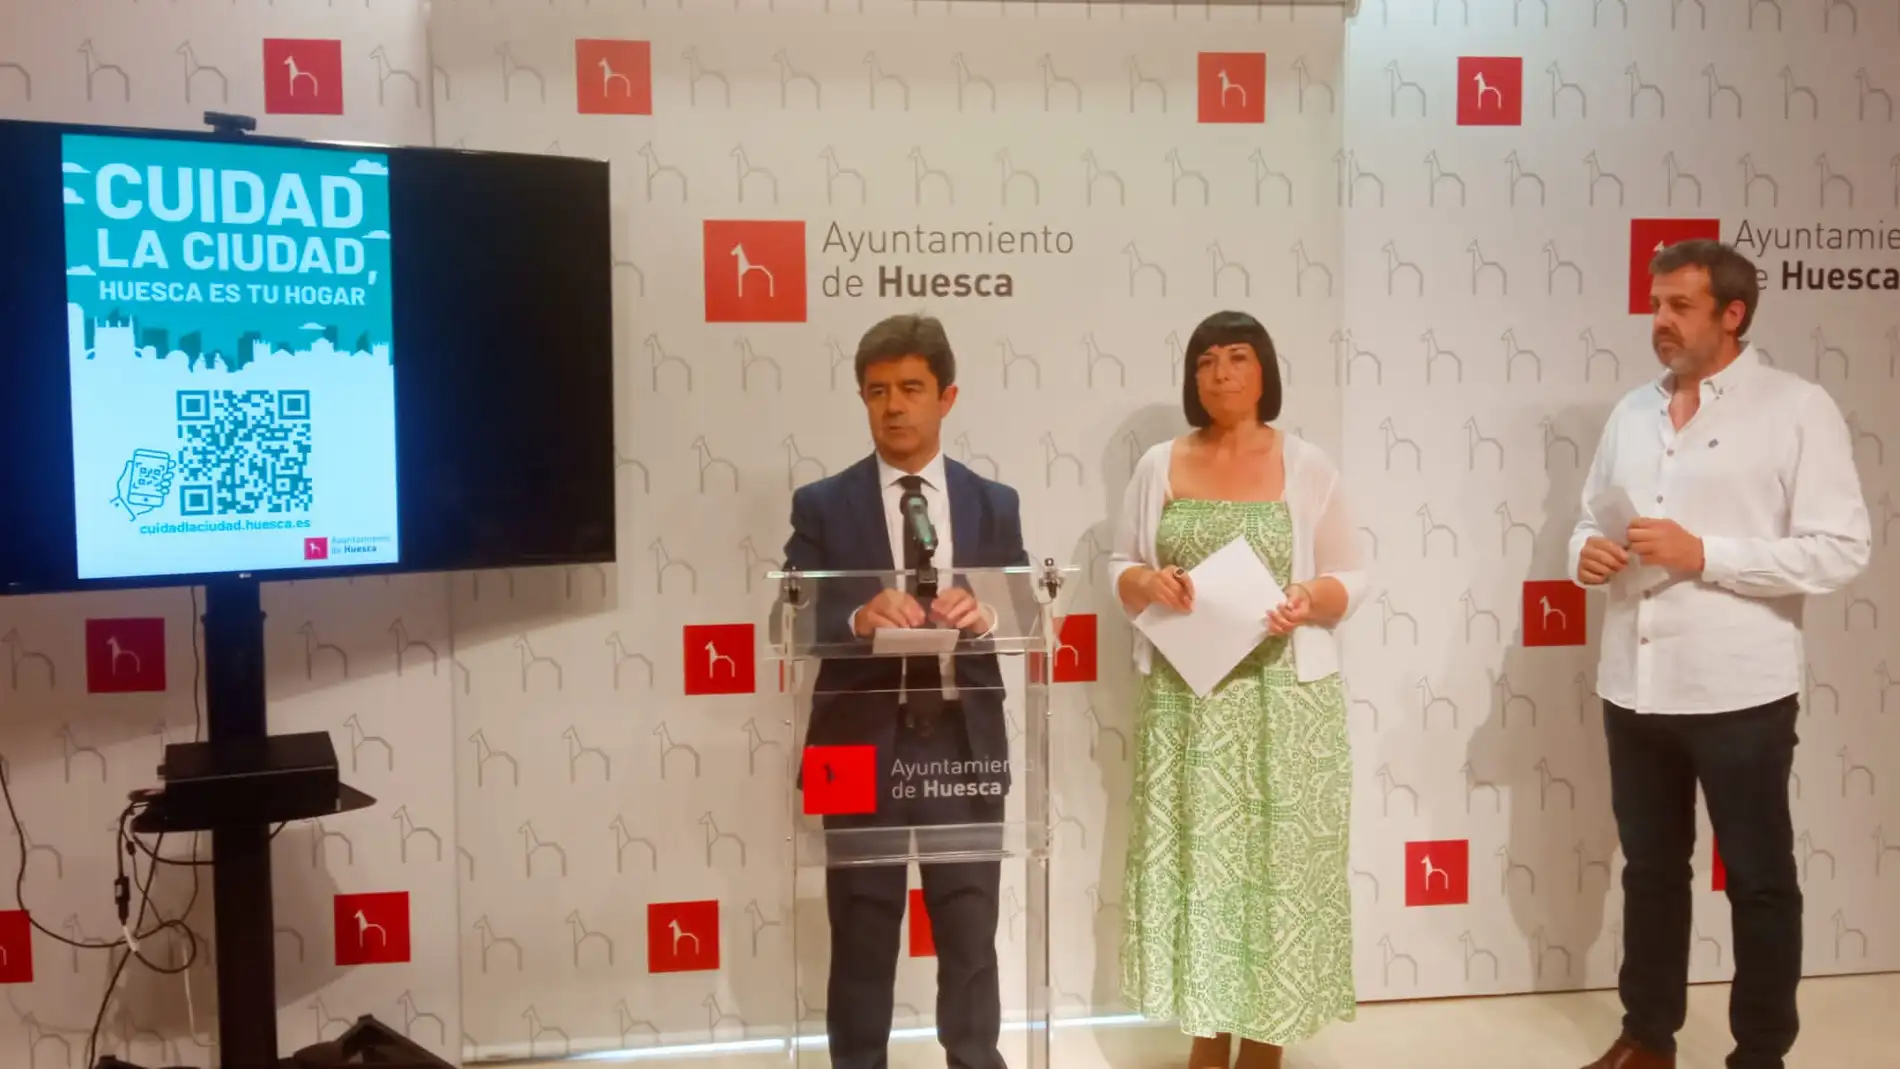 El Ayuntamiento de Huesca lanza la campaña "Cuidad la ciudad"